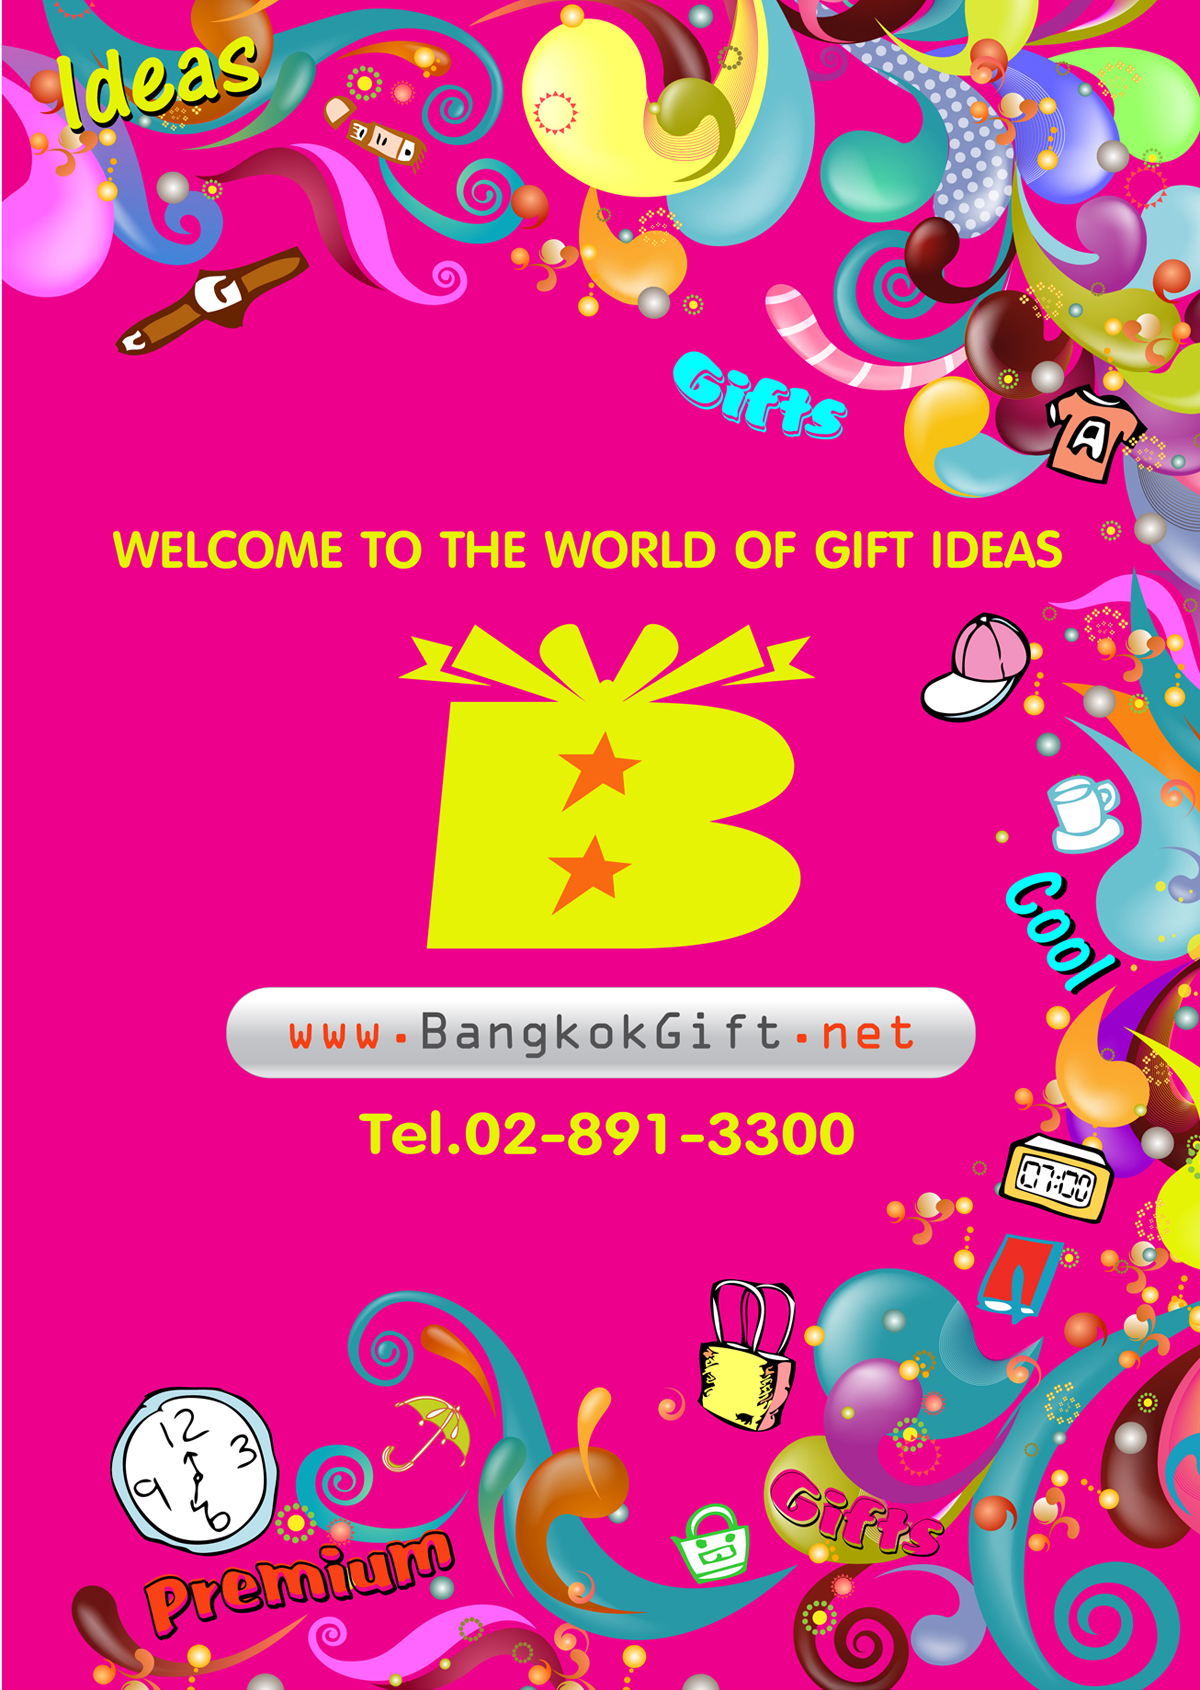 Bangkokgift Catalog 2014 P.1